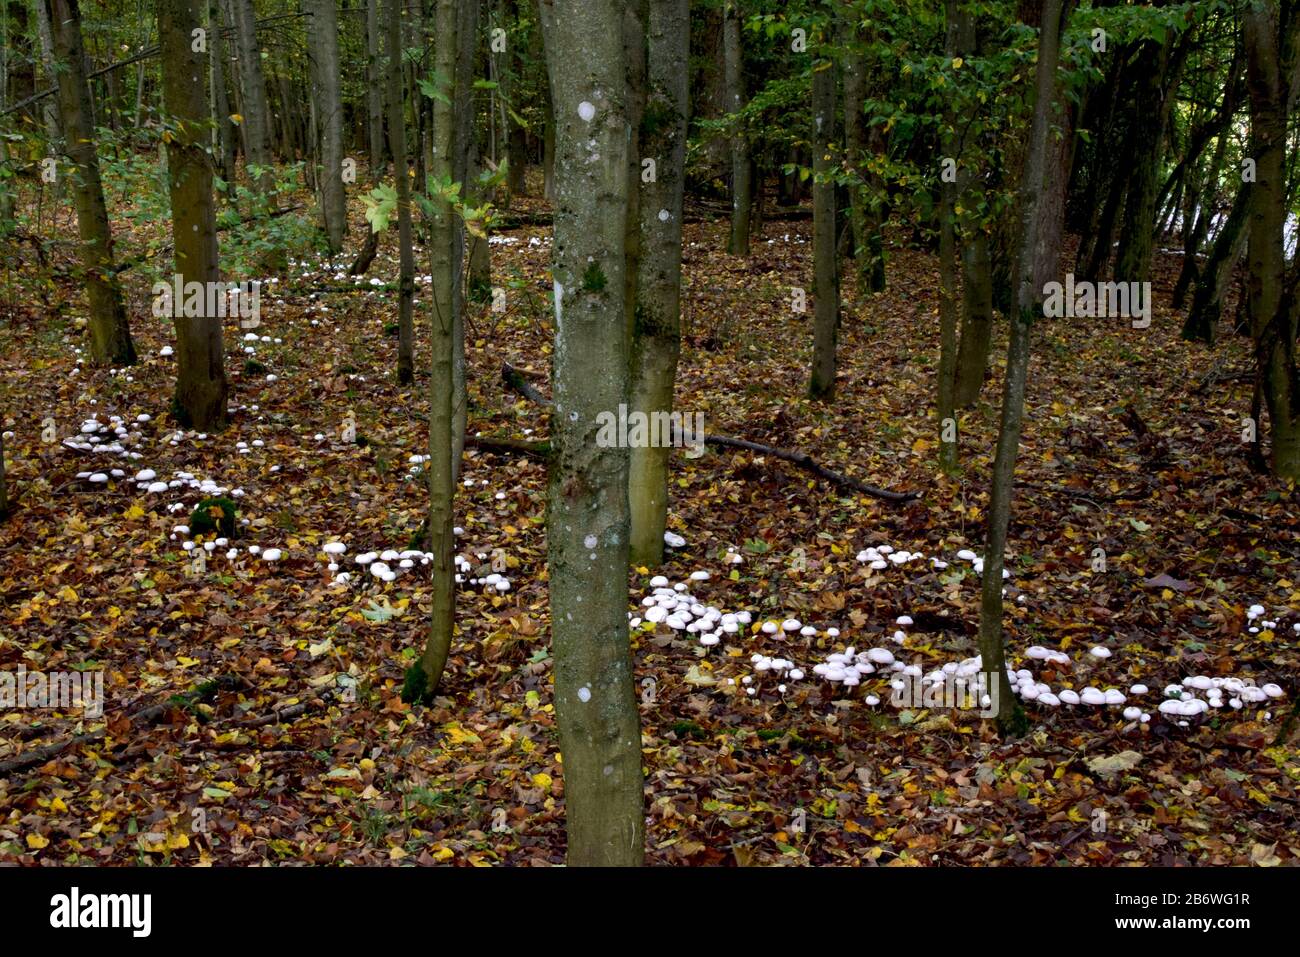 Seta de tinción amarilla, teñidor amarillo (Agaricus xanthoderma). Hongos en un bosque, formando un anillo de hadas. Alemania Foto de stock